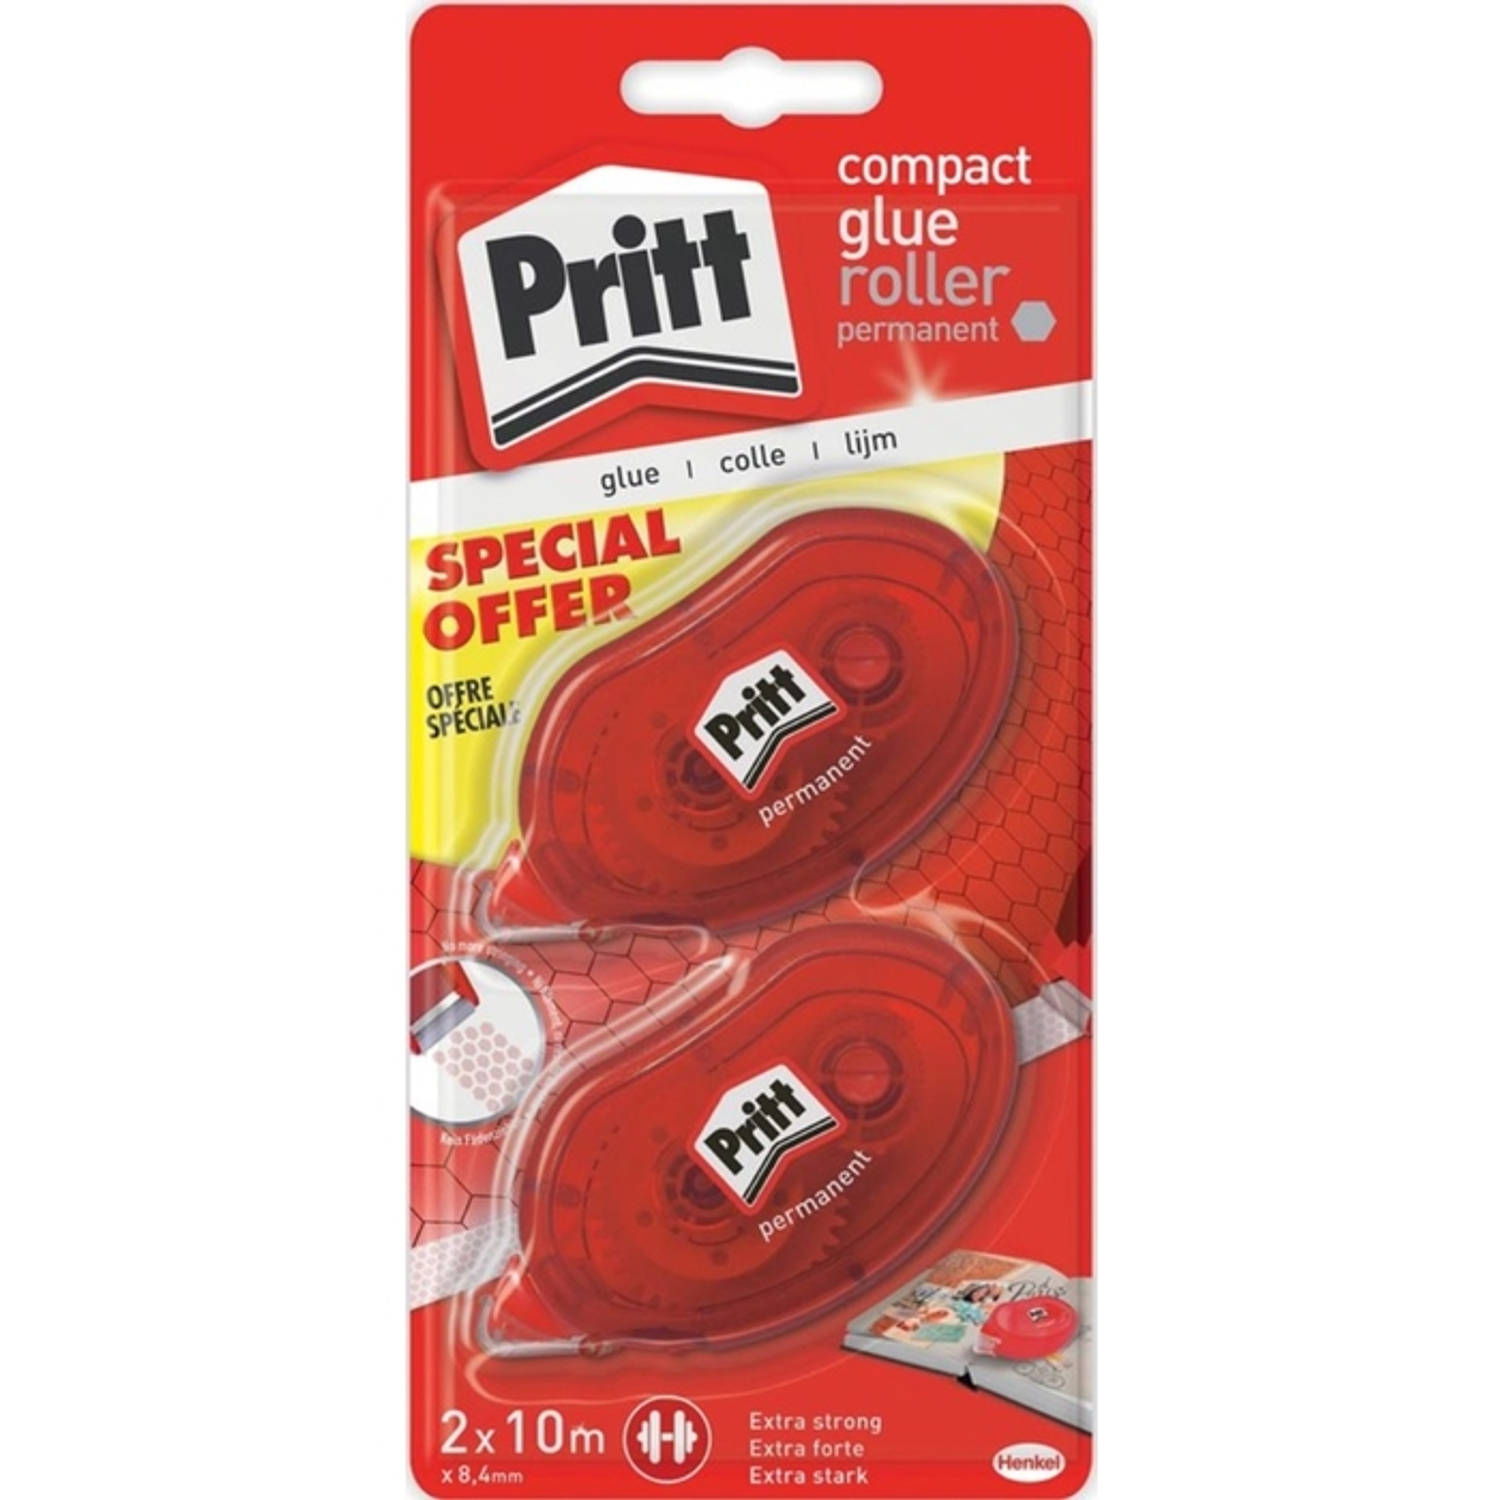 Pritt lijmroller compact permanent, blister met 2 stuks, 2de aan halve prijs